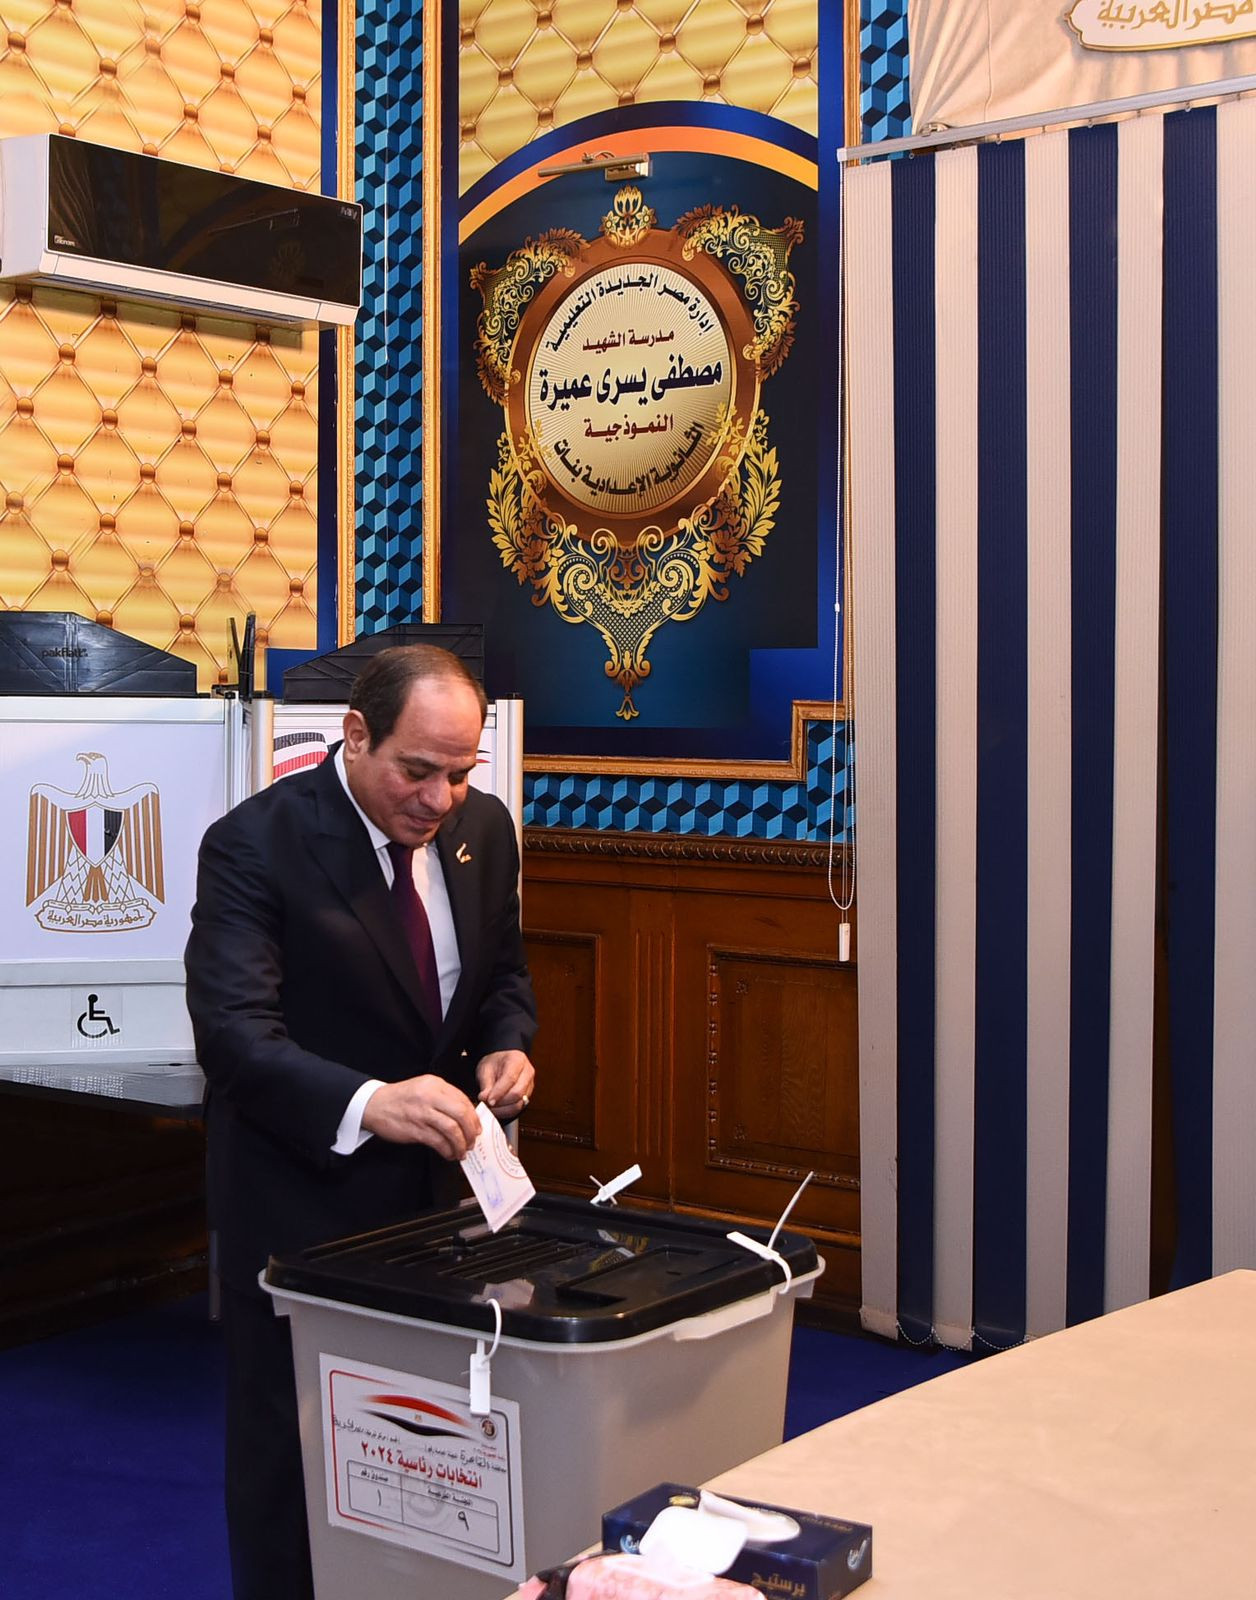 المرشح الرئاسي عبد الفتاح السيسي يدلي بصوته